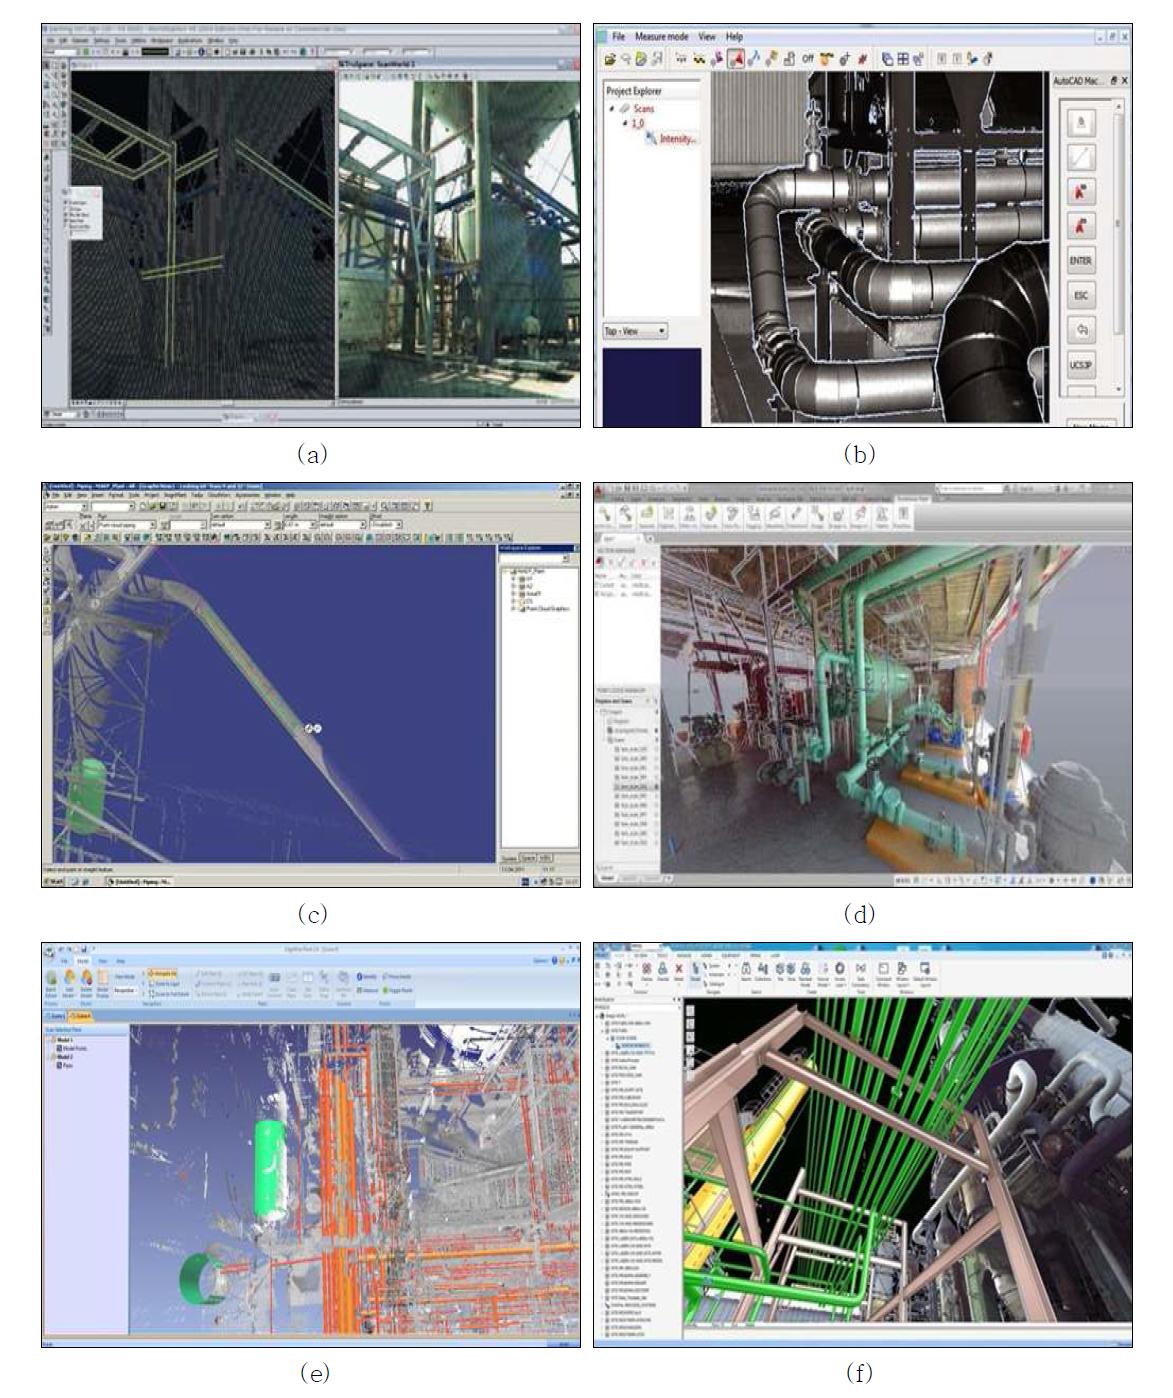 3차원 As-Built 플랜트 정보 모델 구축 업체별 소프트웨어의 사용자 인터페이스 (a) Leica CloudWorx (Leica Geosystems사), (b) VirtuSurv (Kubit사), (c) SmarPlant 3D (Intergraph사), (d) AutoCAD Plant 3D (Autodesk사), (e) EdgeWise Plant (ClearEdge 3D사), Laser Modeller (Aveva사)